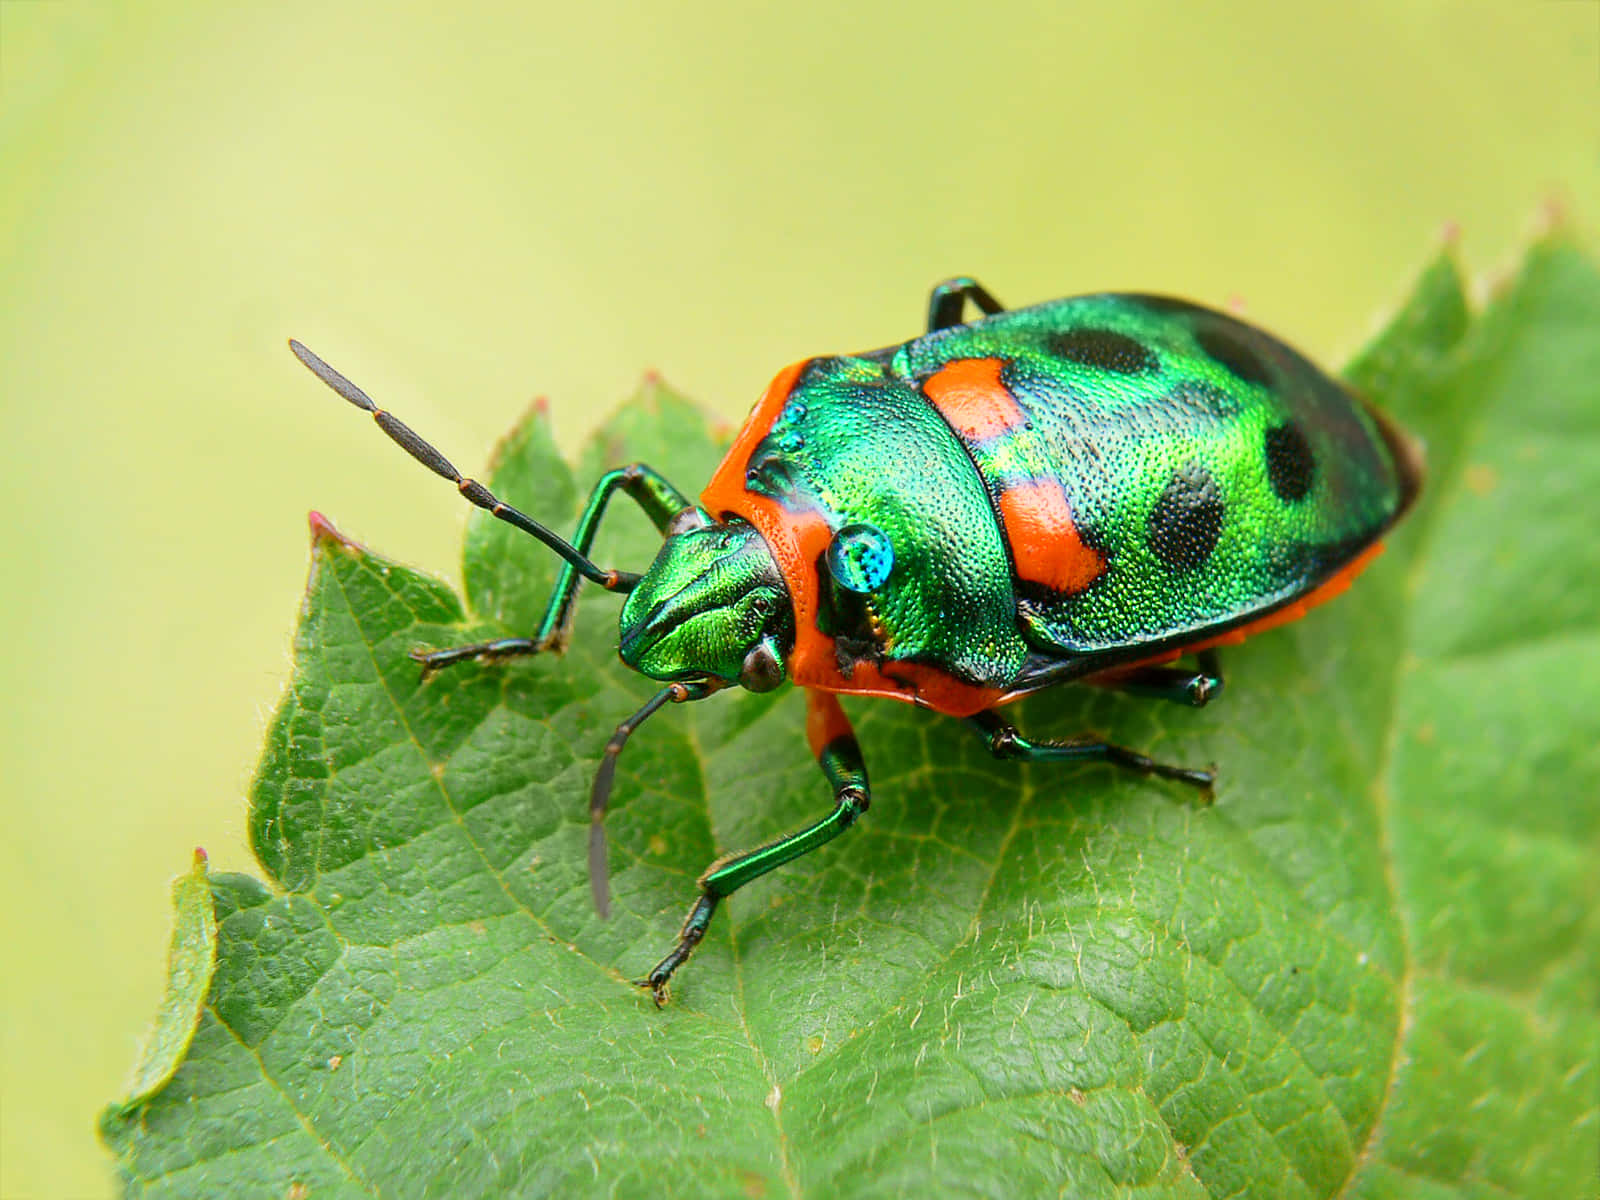 Vibrant Green Stink Bug On Leaf Wallpaper